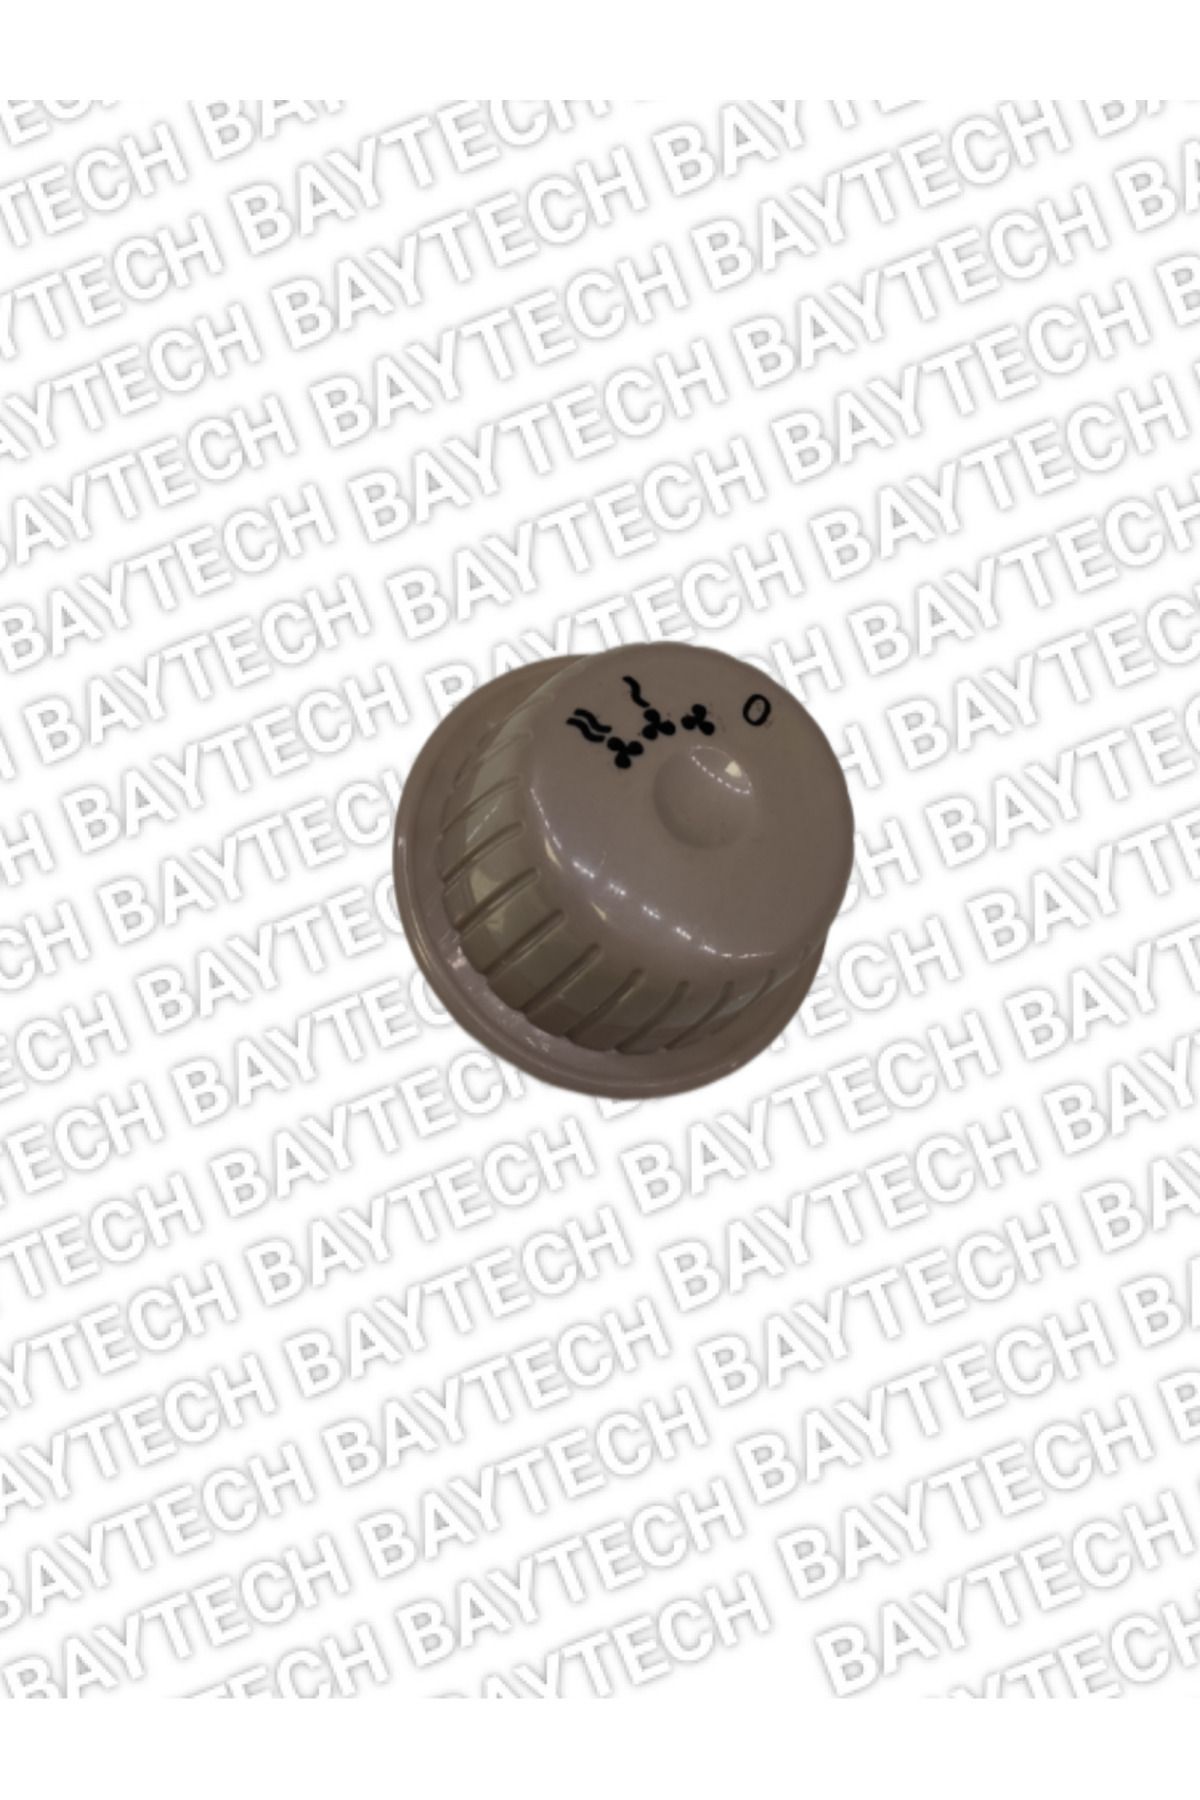 Baytech Kumtel 6331 Uyumlu Fanlı Isıtıcı Anahtar Düğmesi(BEJ)